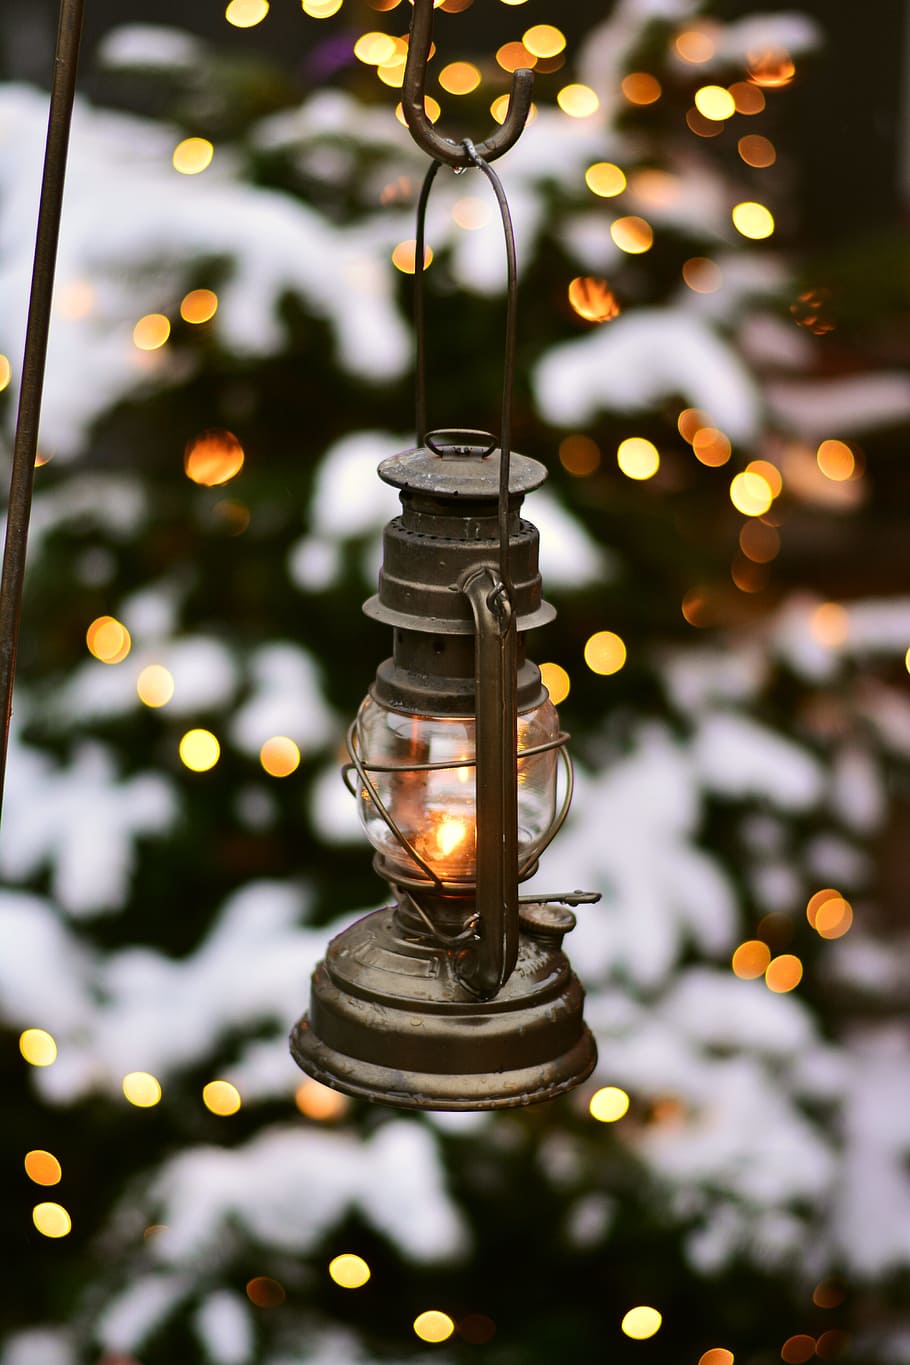 cinza, lâmpada de querosene, enforcado, preto, gancho de metal, lanterna, natal, decoração de natal, luz, iluminação